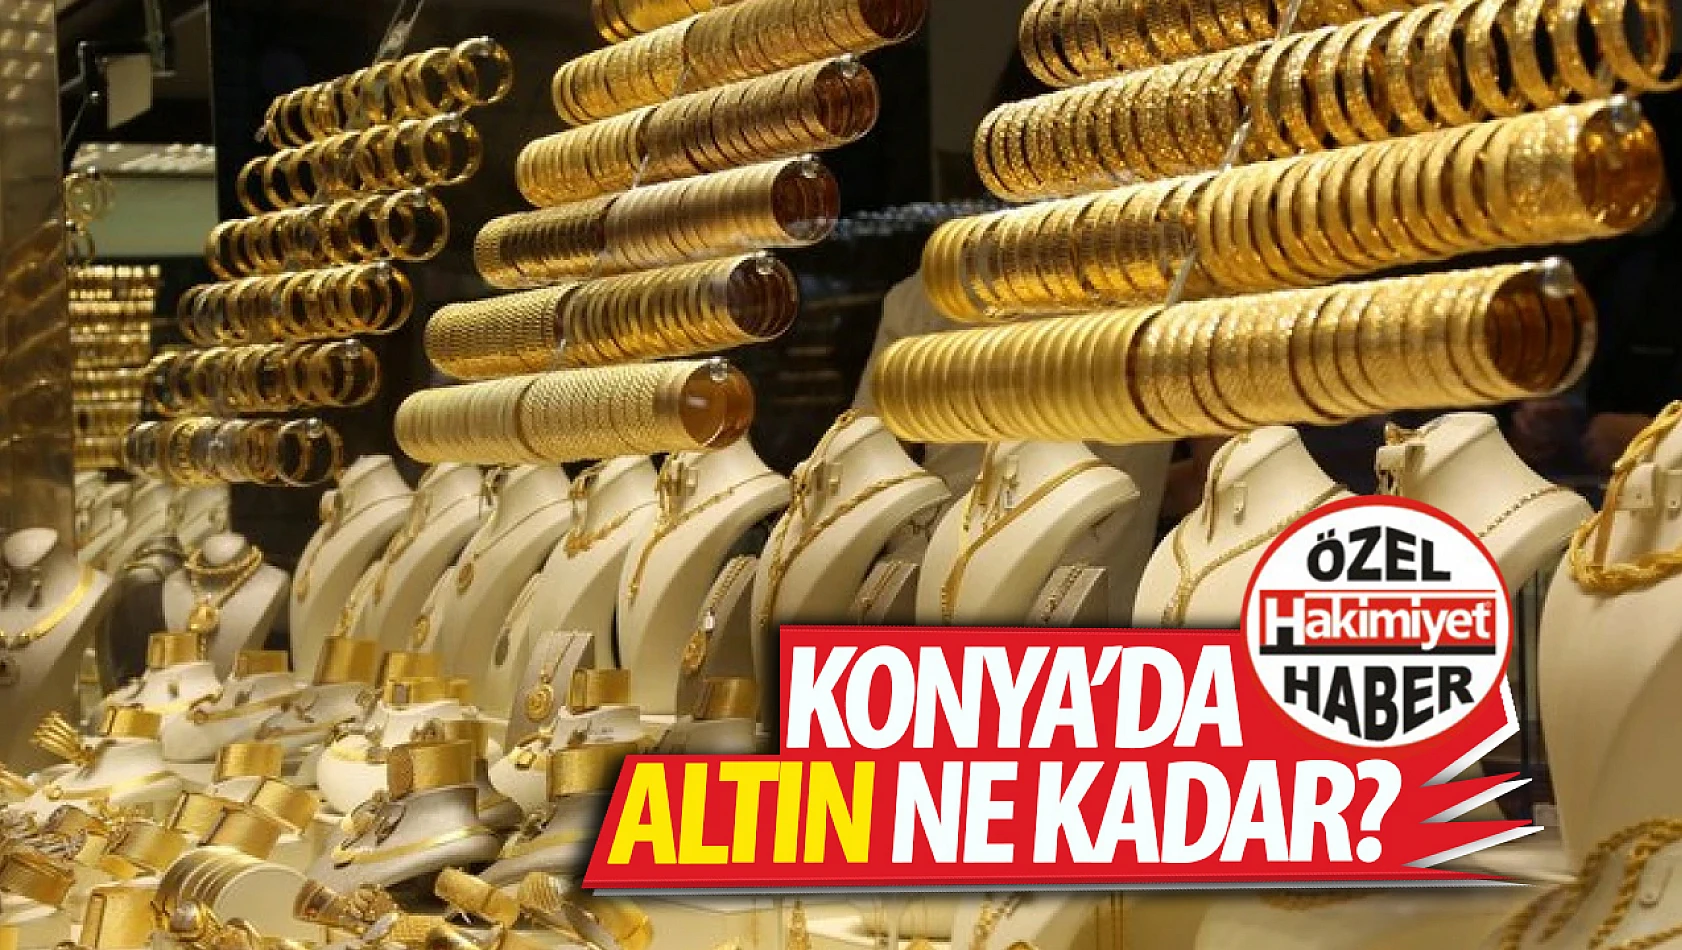 Konya'da bugün altın piyasası ne durumda? Yükseliş ya da düşüş var mı? 